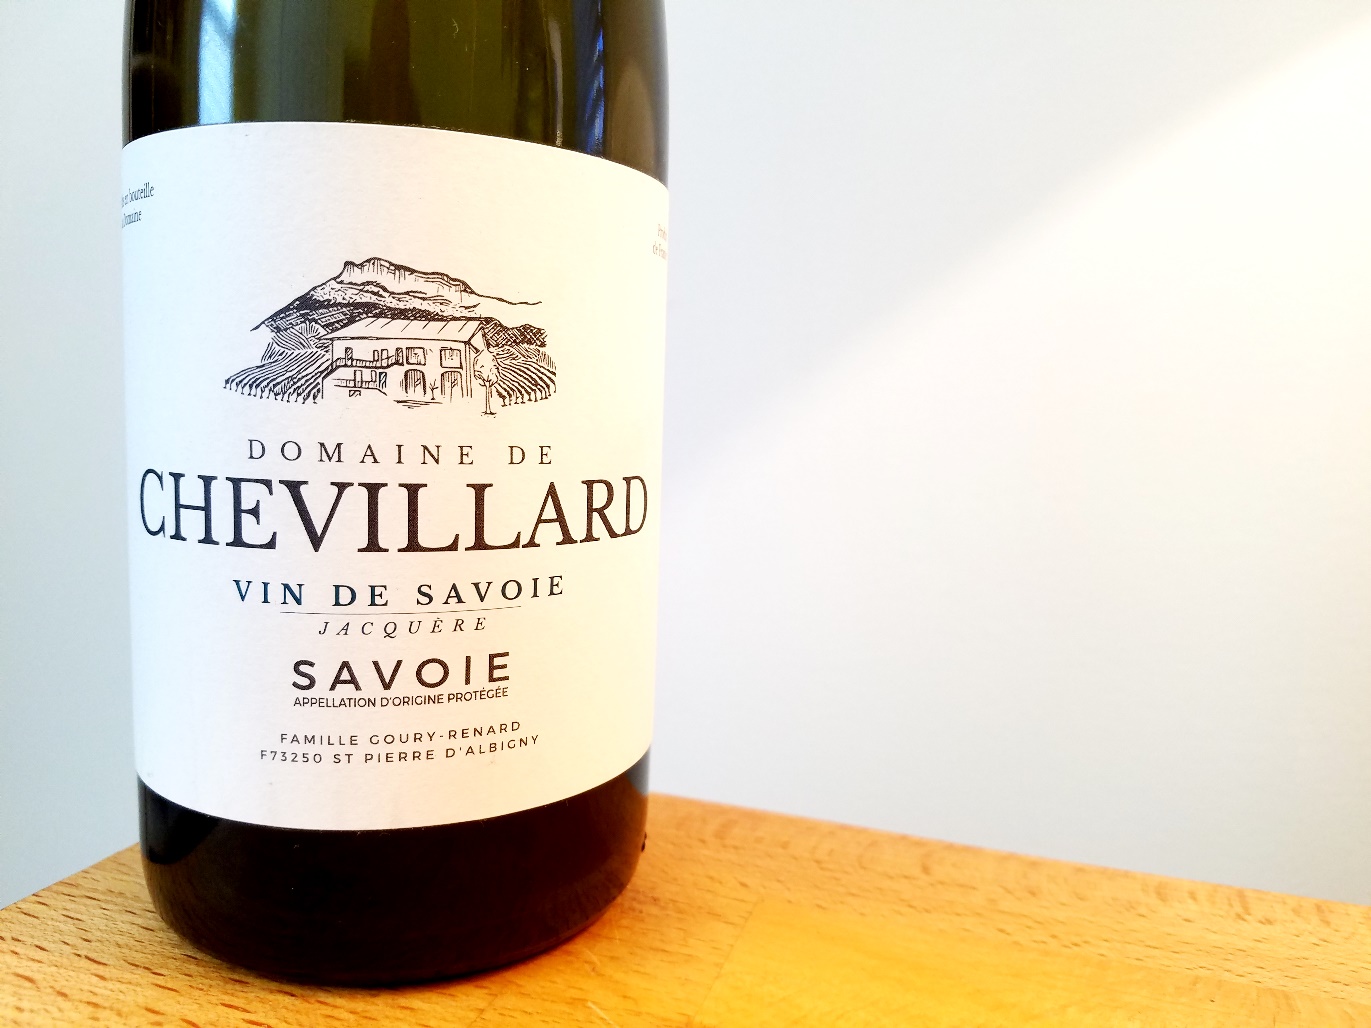 Domaine de Chevillard, Vin de Savoie 2016 Jacquère, France, Wine Casual